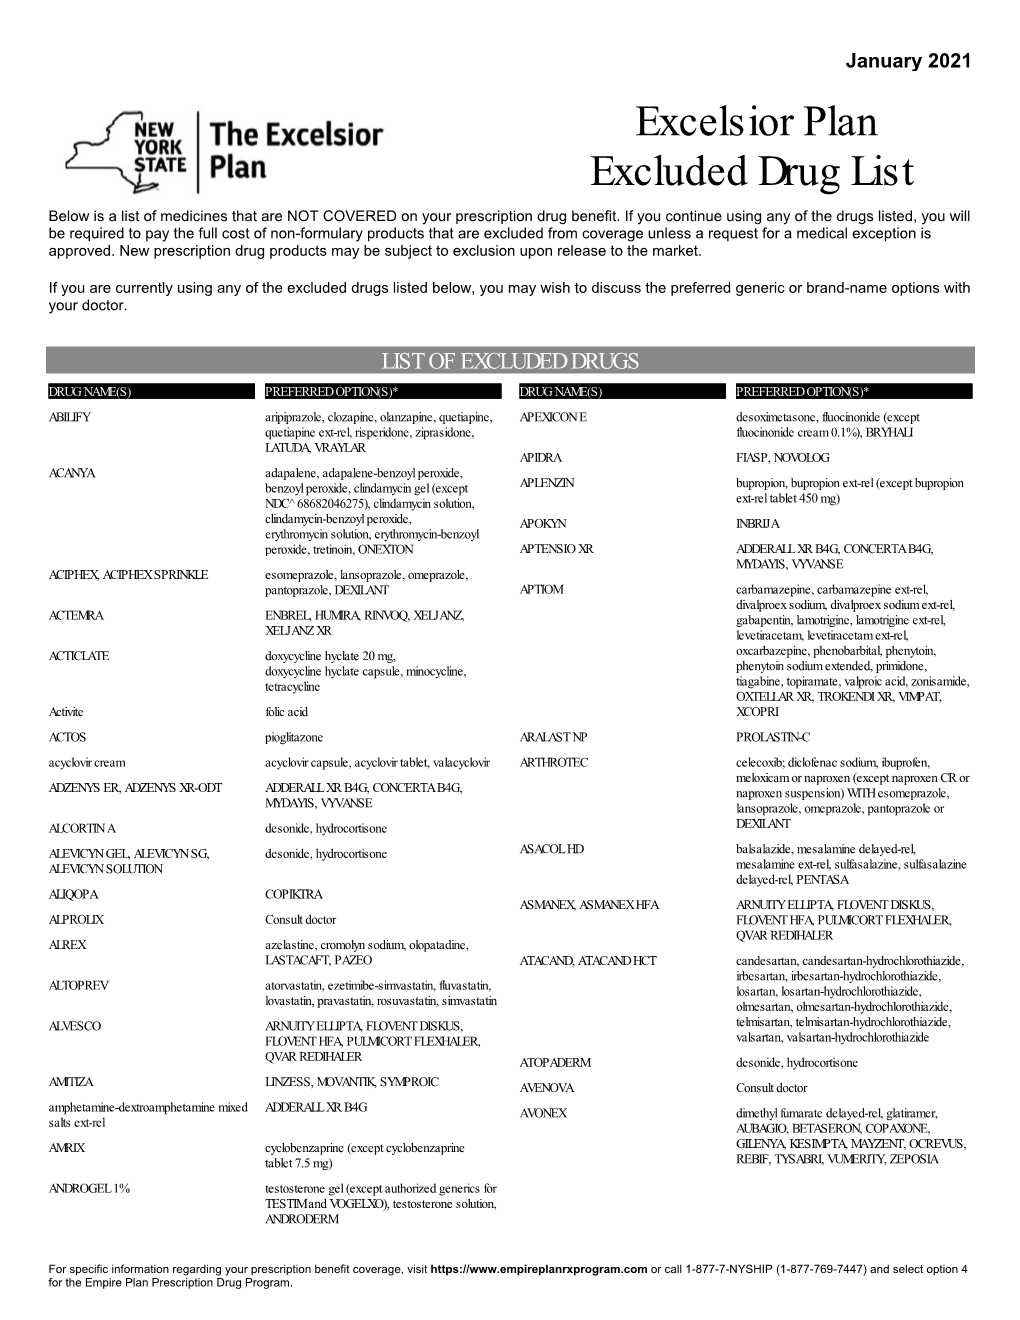 Excelsior Plan Excluded Drug List